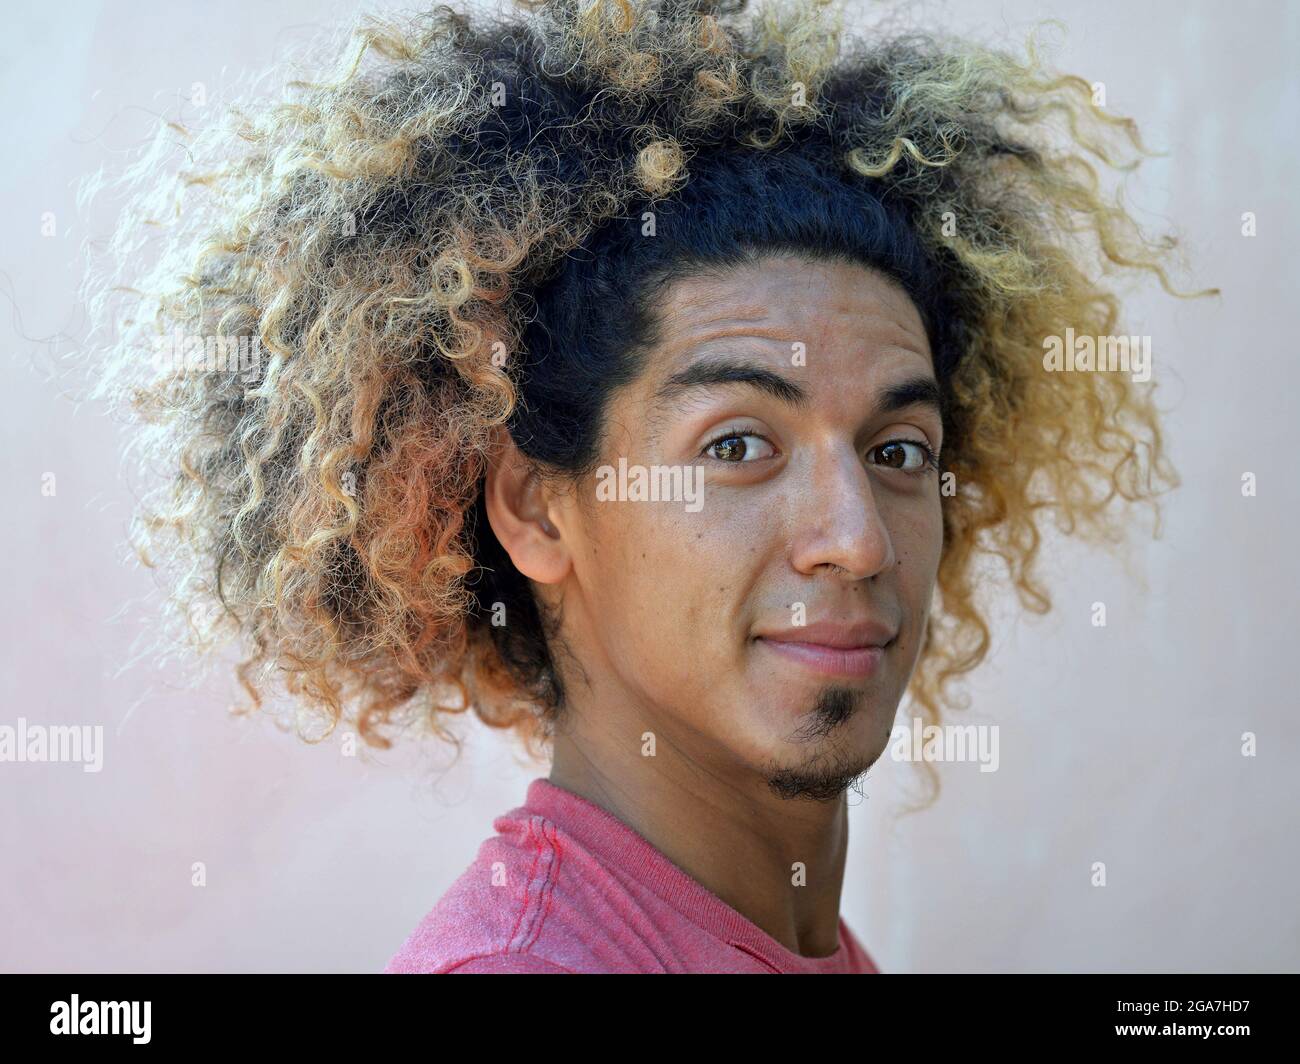 Der junge lateinamerikanische Mann mit einem Schock wilder lockiger Haare und blonden gefärbten Haaren lächelt mit geschlossenem Mund an der Kamera. Stockfoto